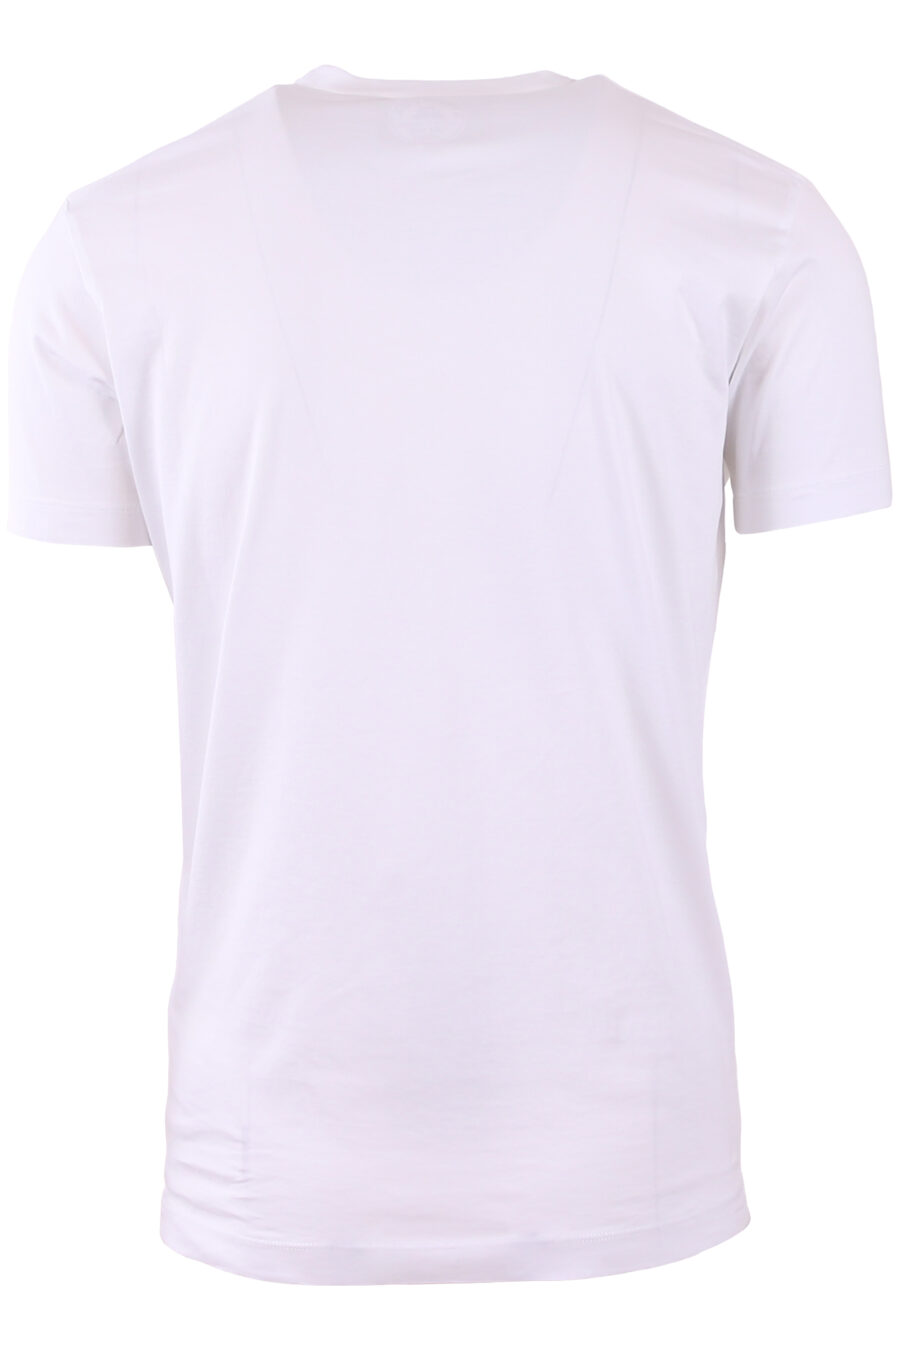 maxilogo T-shirt branca "dsquared2 milano" - IMG 3571 1